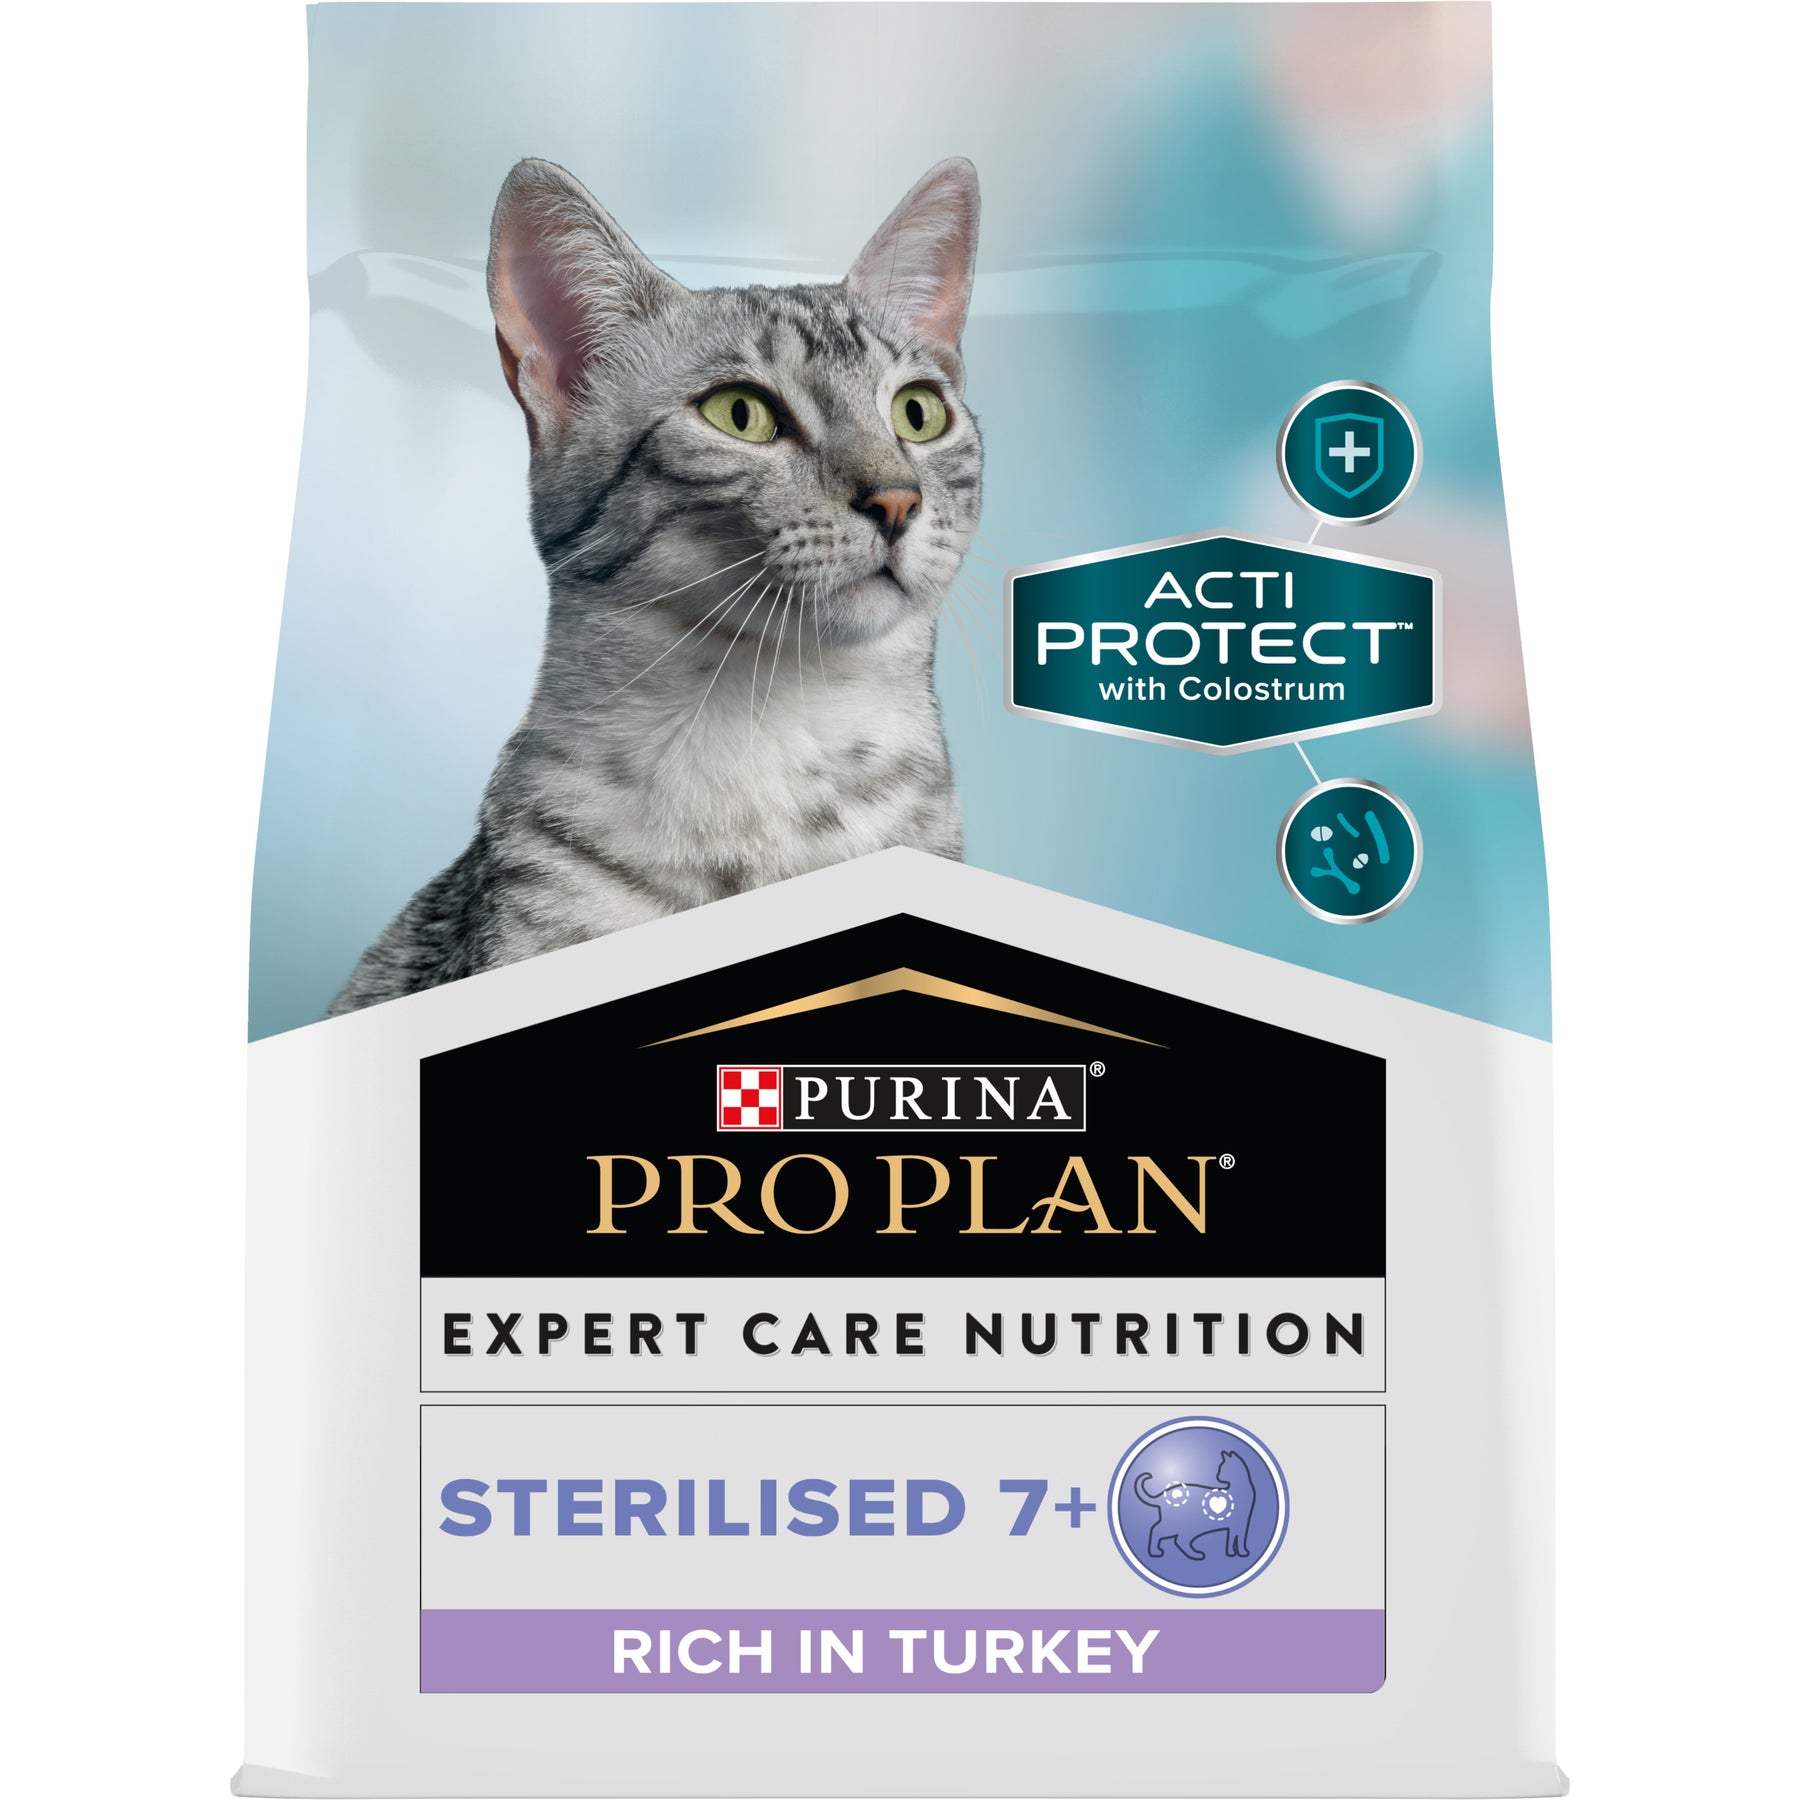 PURINA® PRO PLAN® Expert Care Nutrition - Feline Sterilised 7+ - Turkey